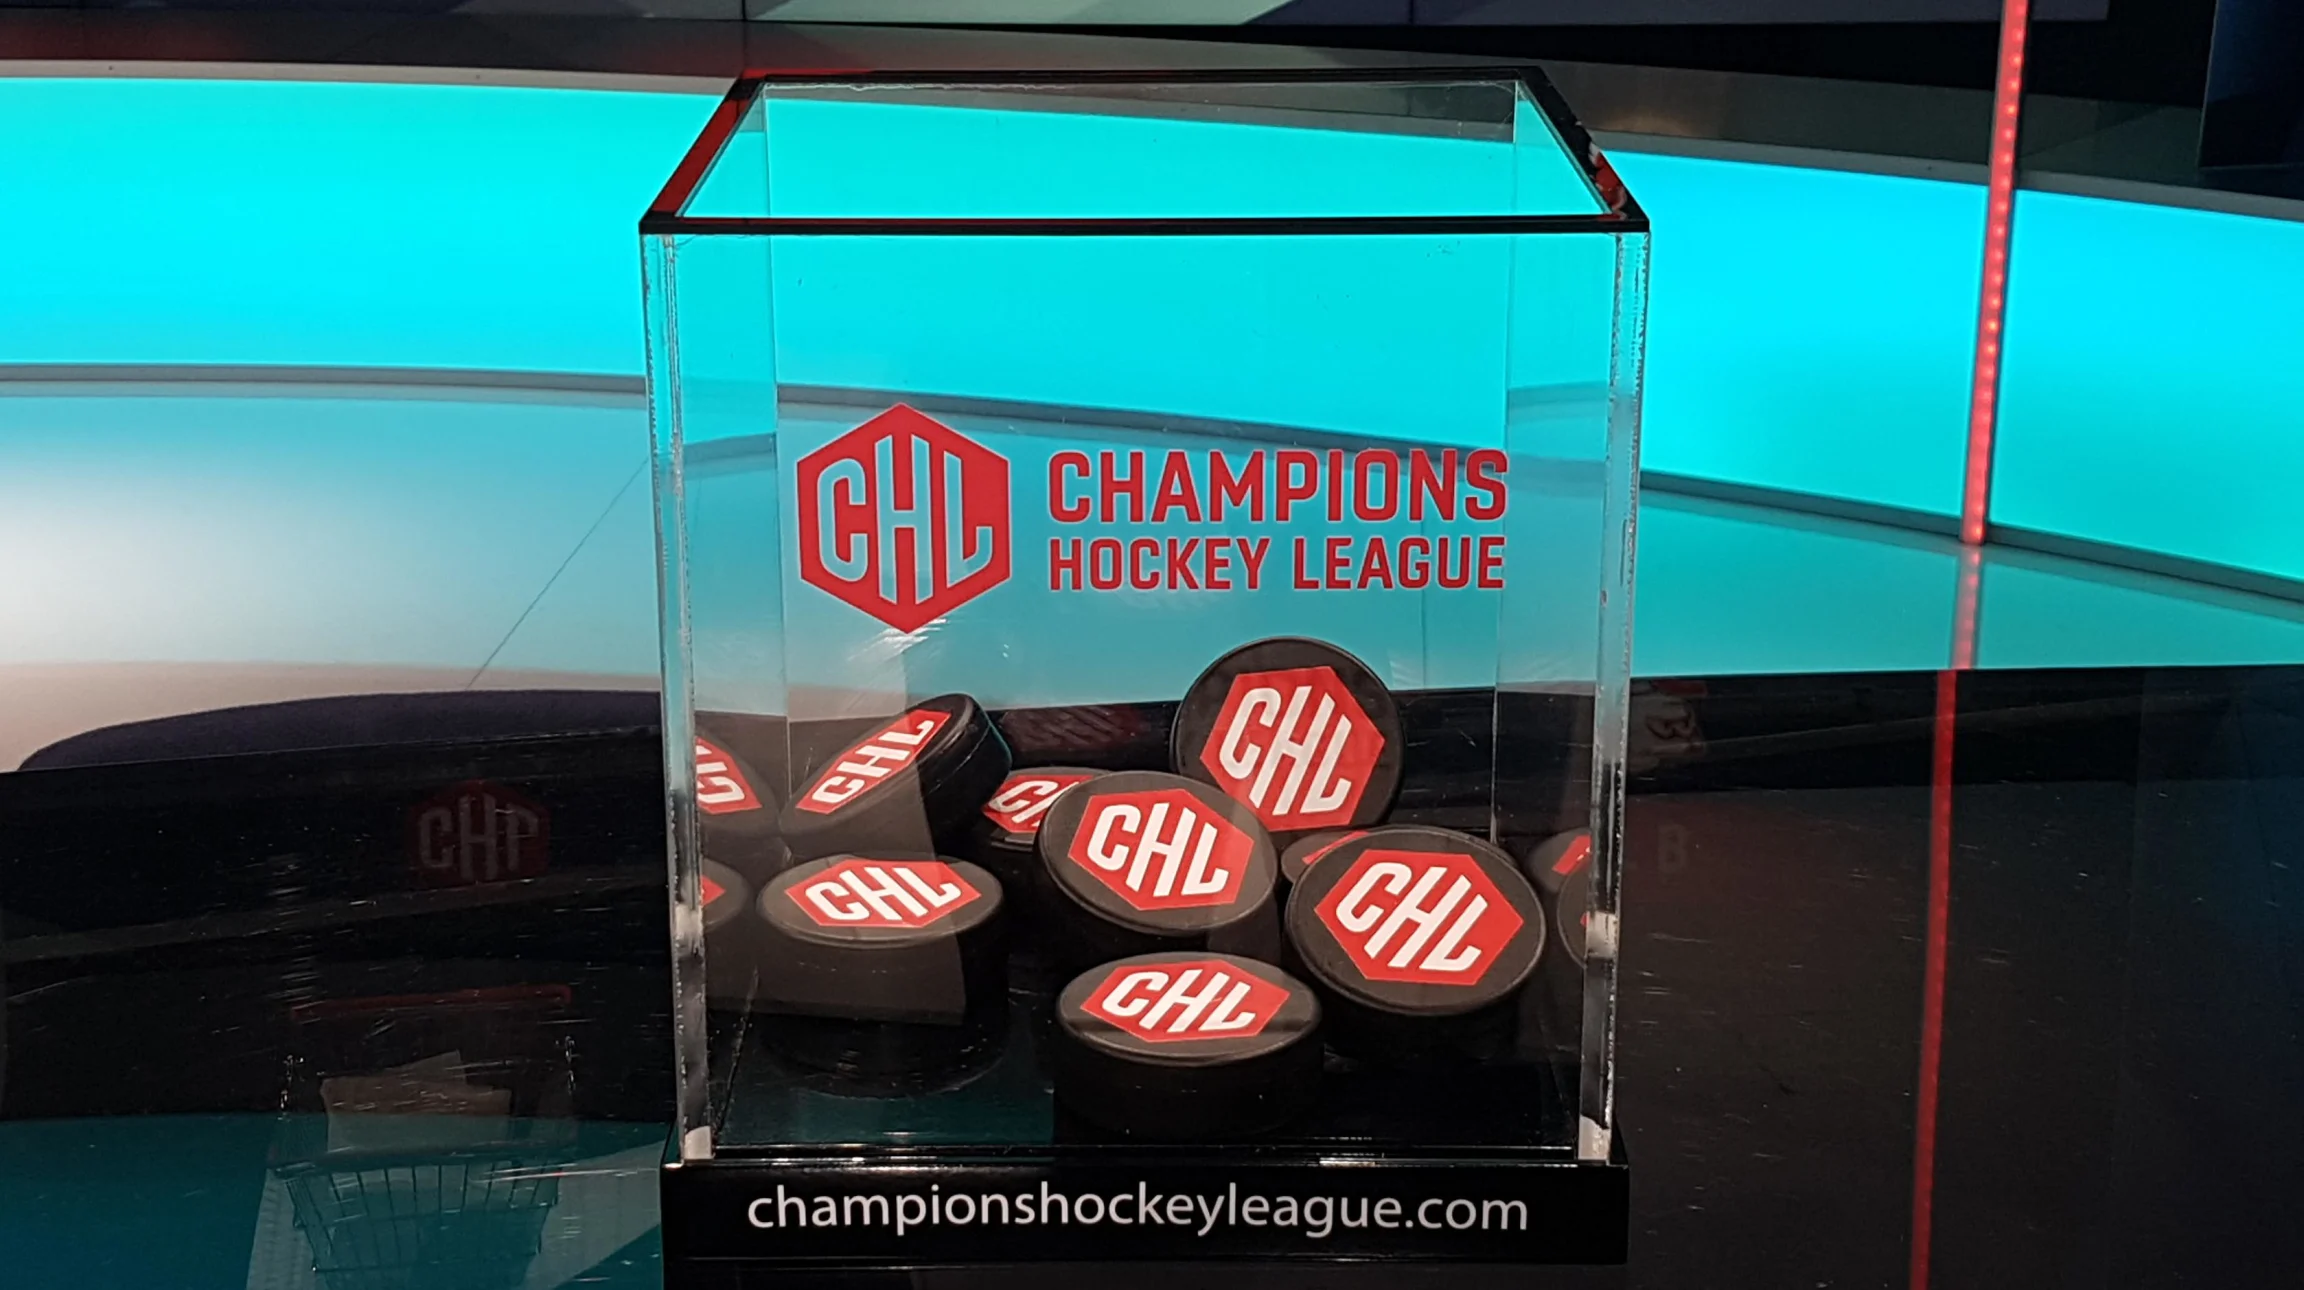 champions league hockey 2019